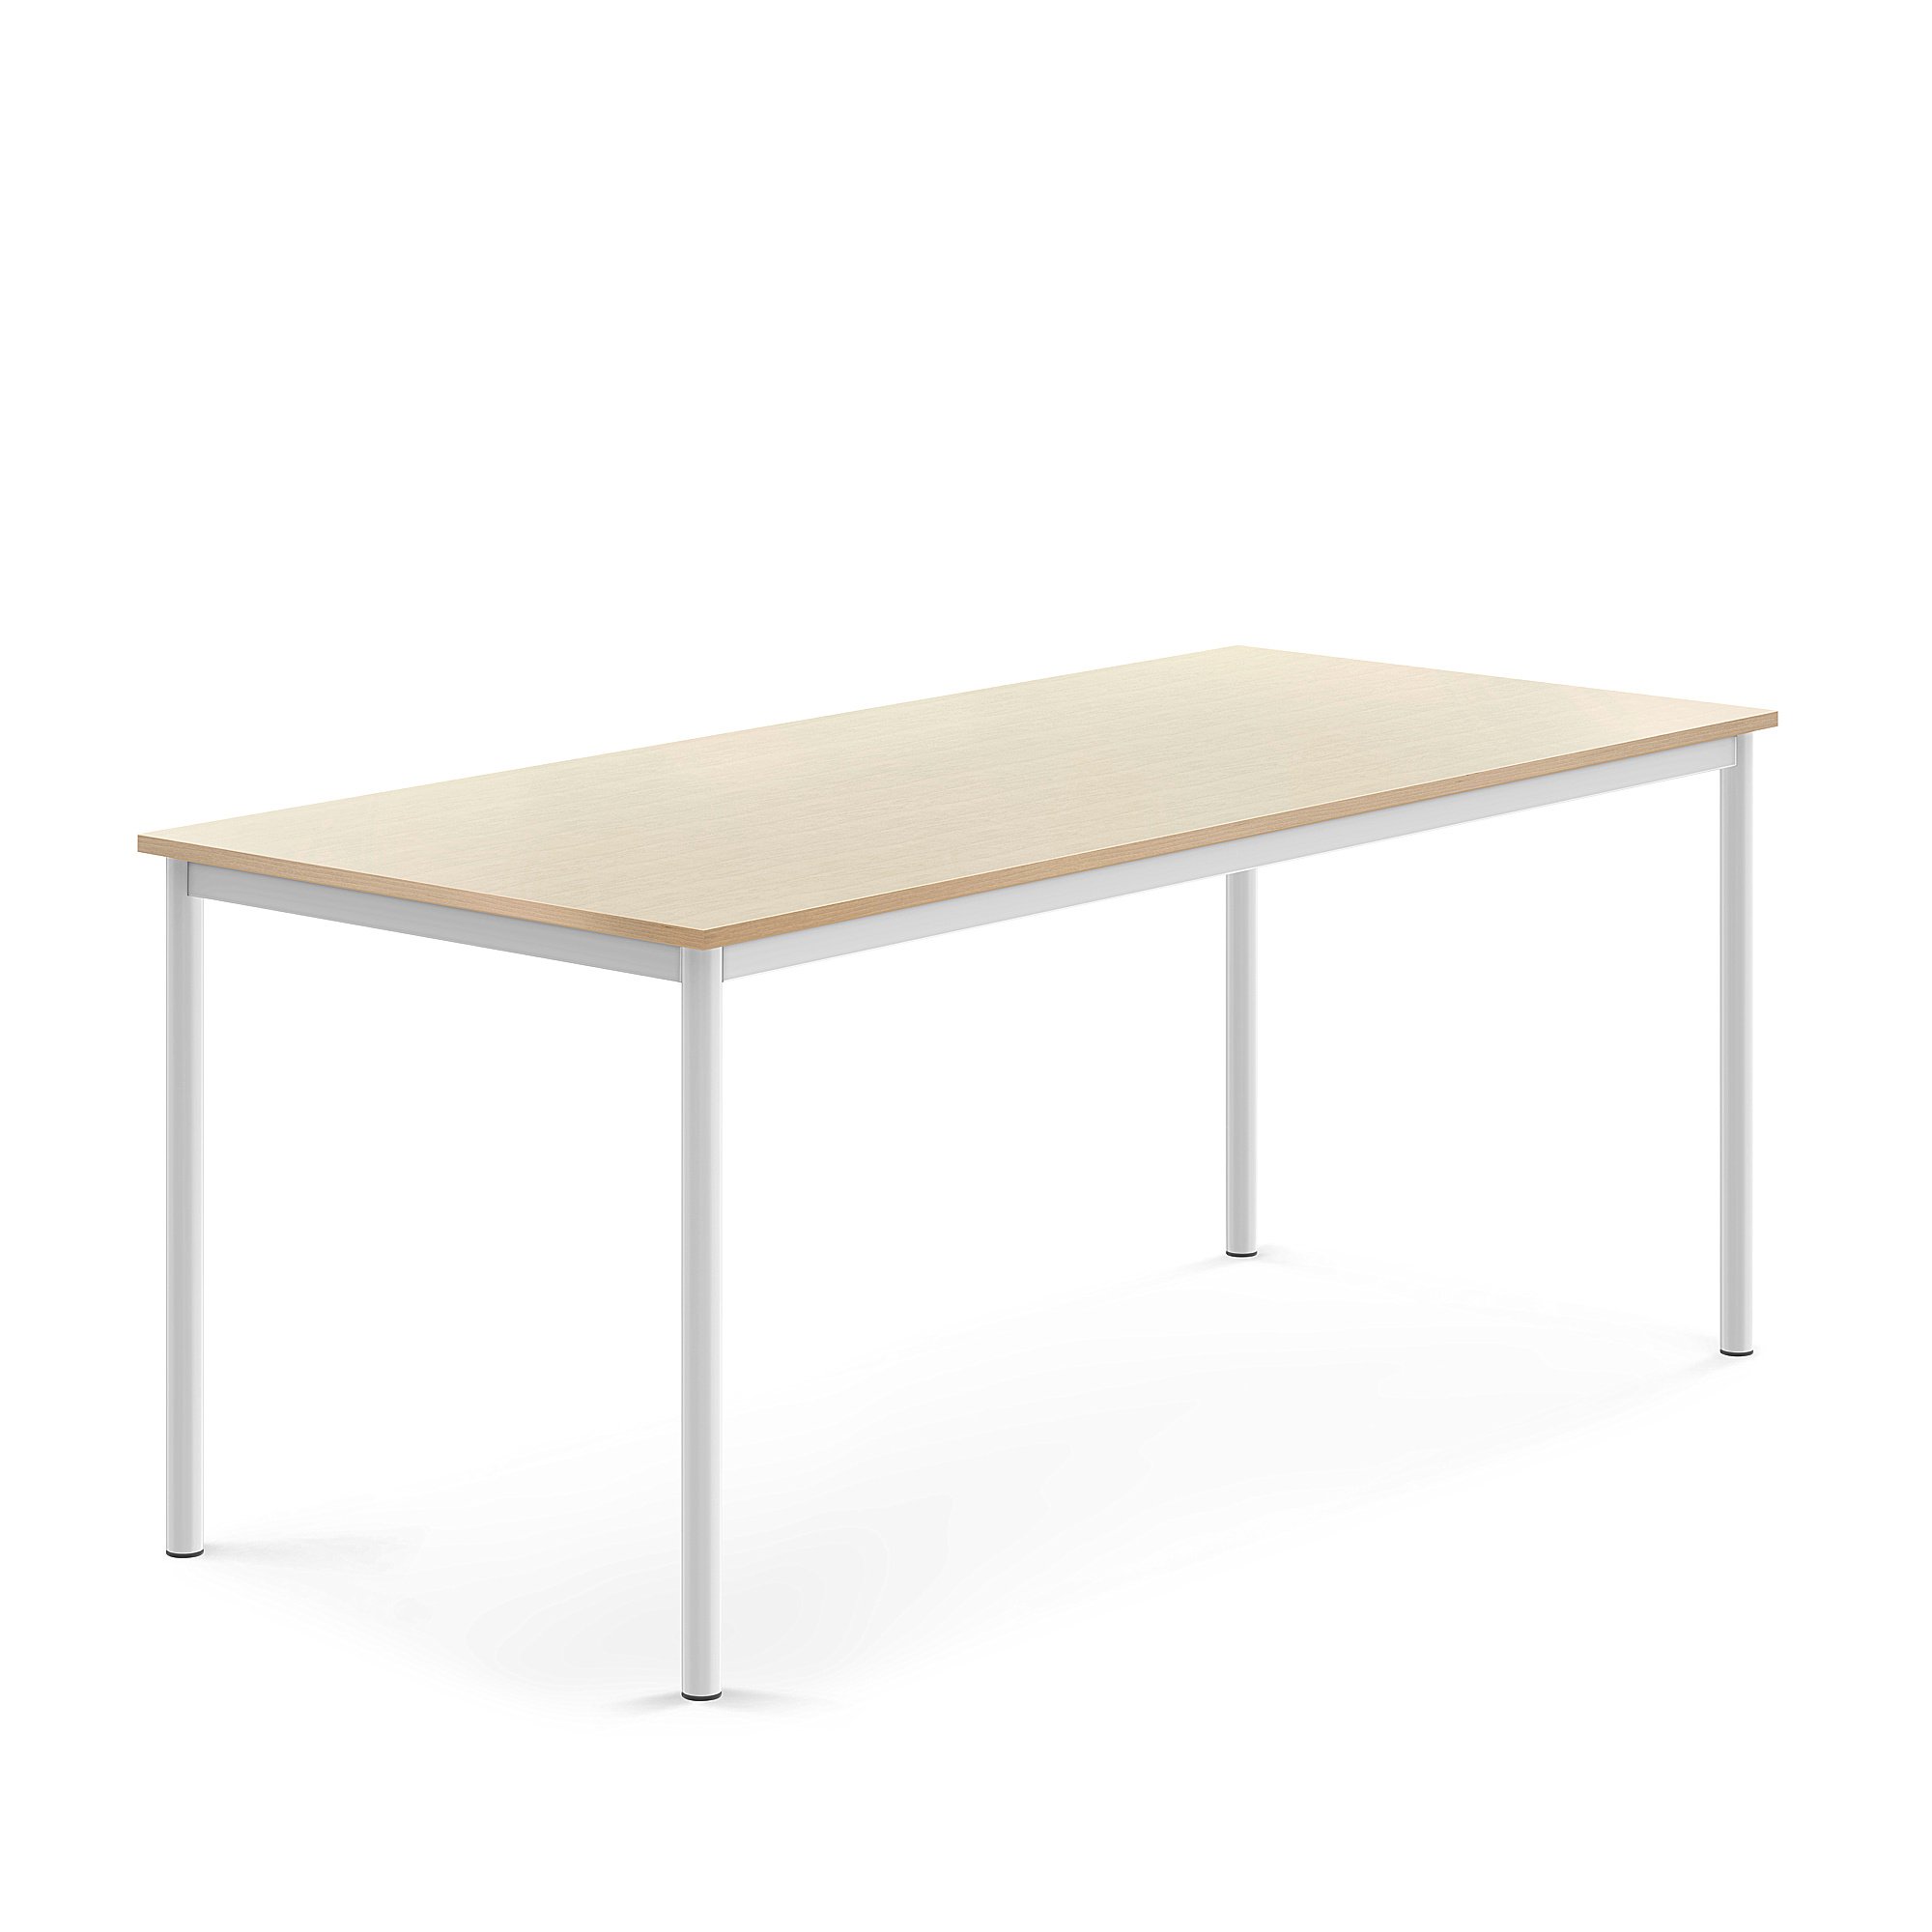 Stůl BORÅS, 1800x800x720 mm, bílé nohy, HPL deska, bříza